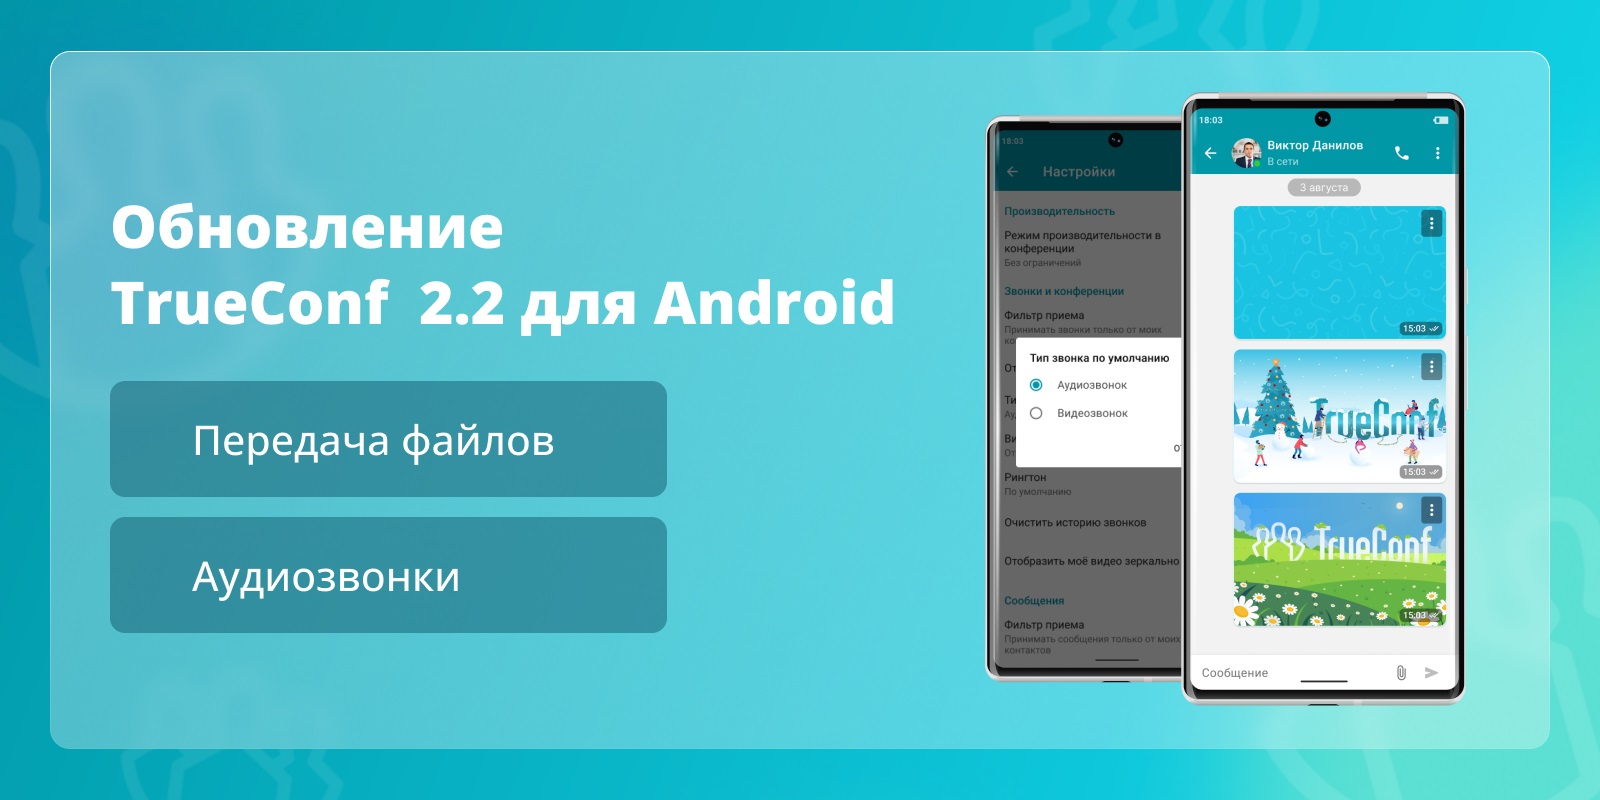 TrueConf 2.2 для Android: Аудиозвонки и передача файлов 1